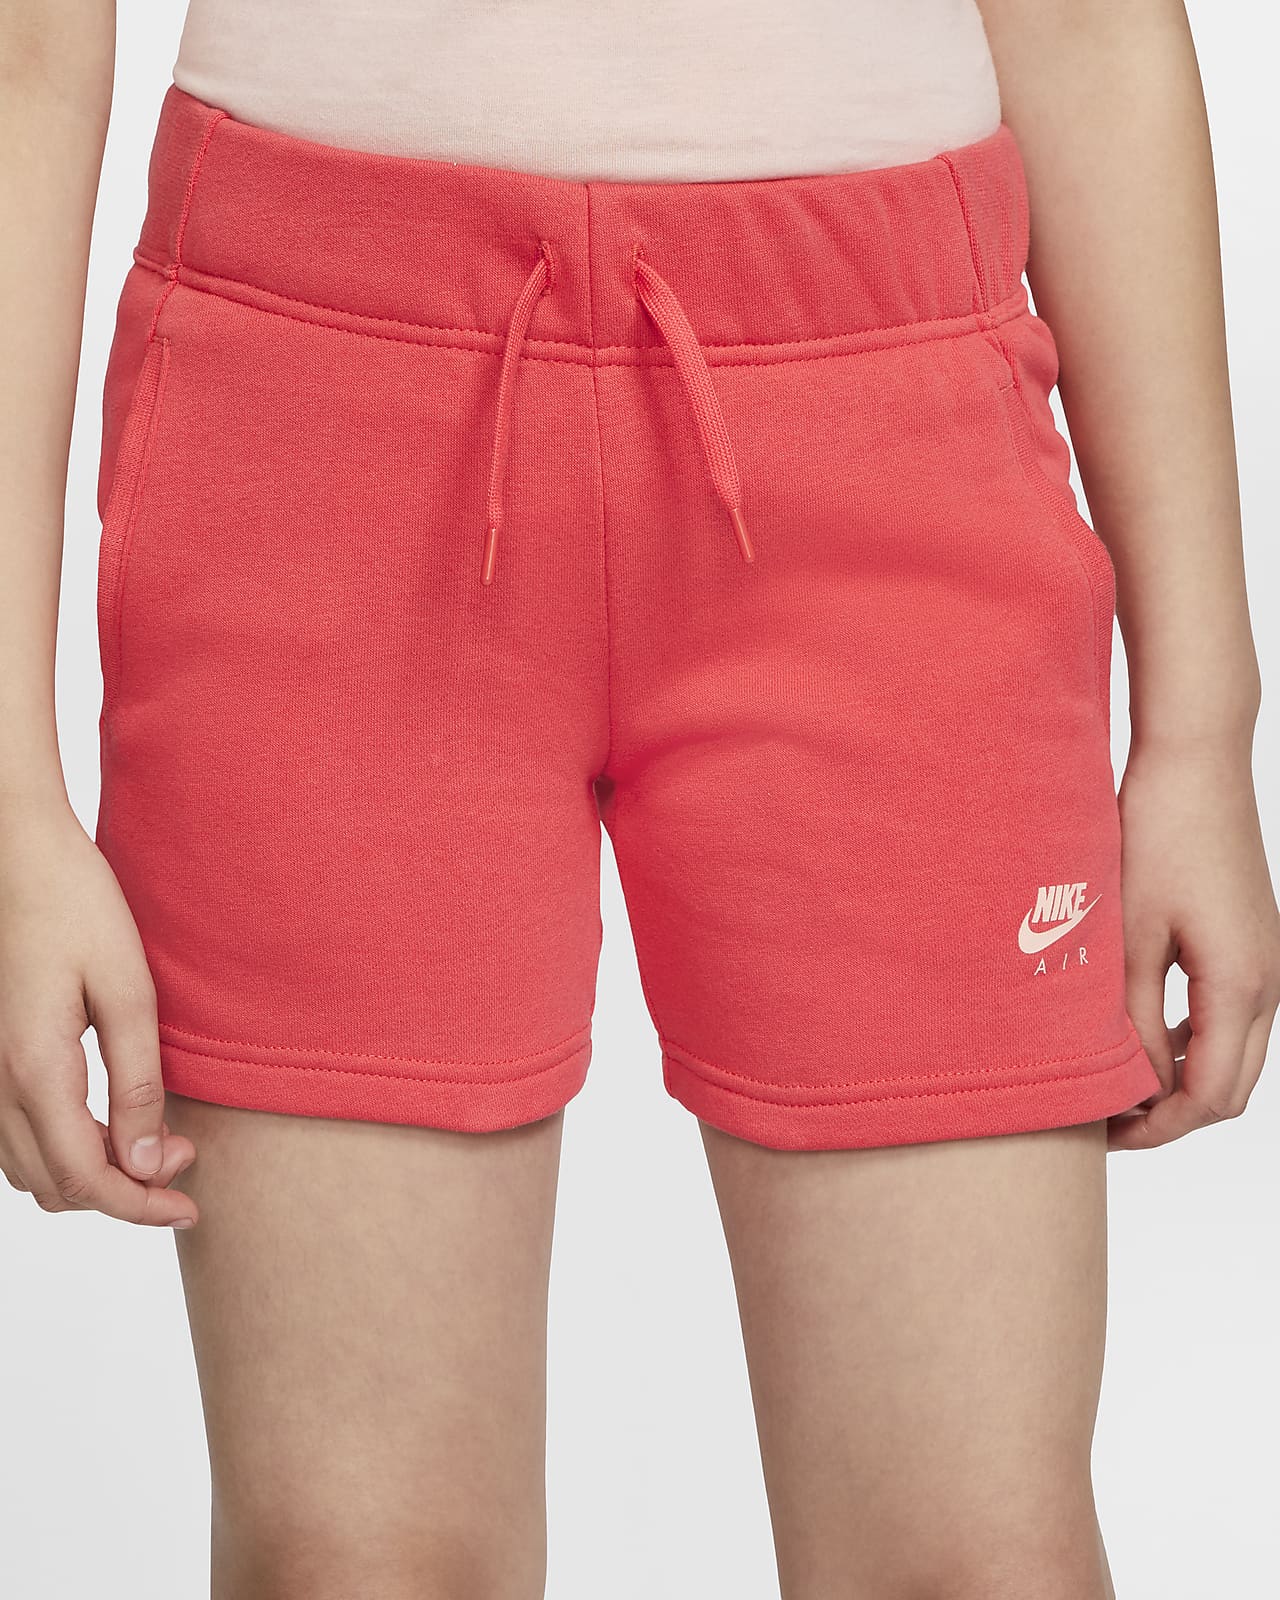 girls red nike shorts